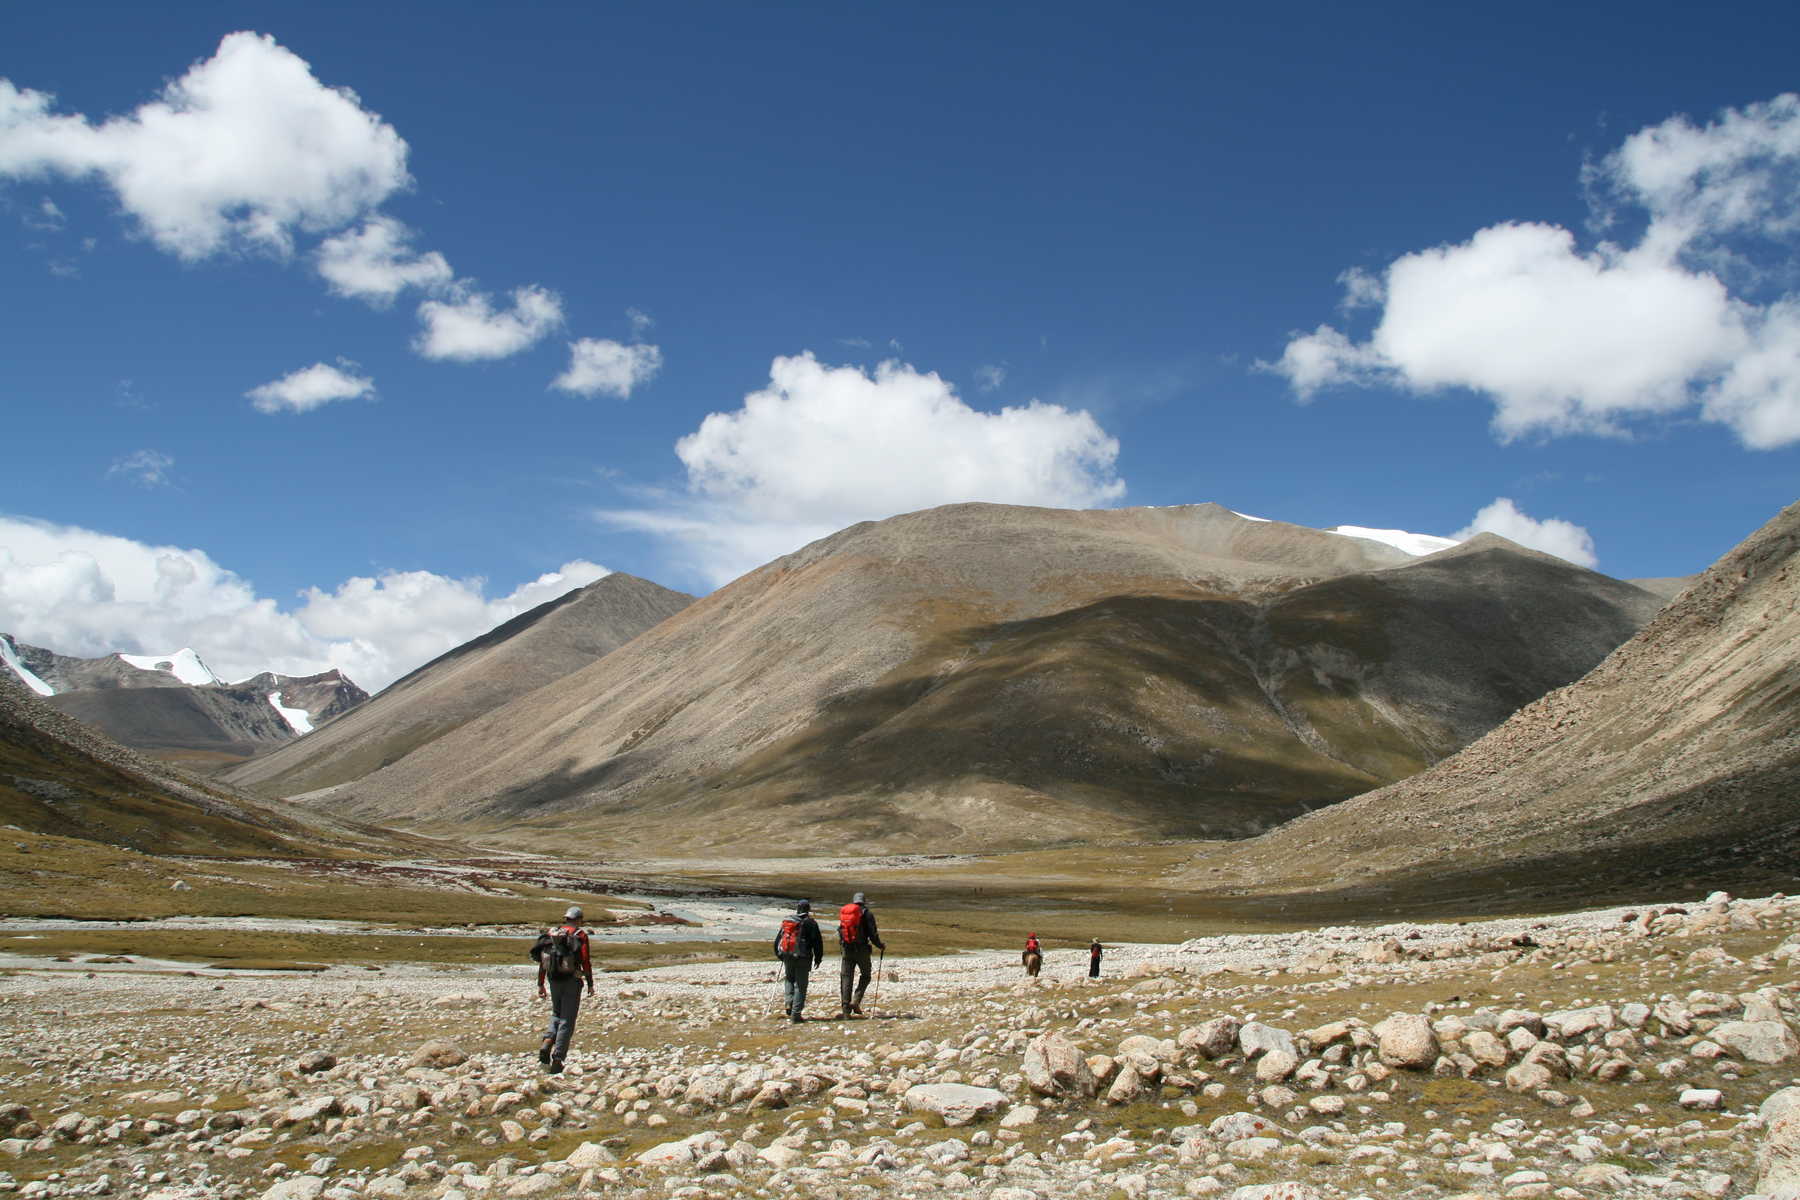 Randonneurs sur les hauts plateaux tibétains